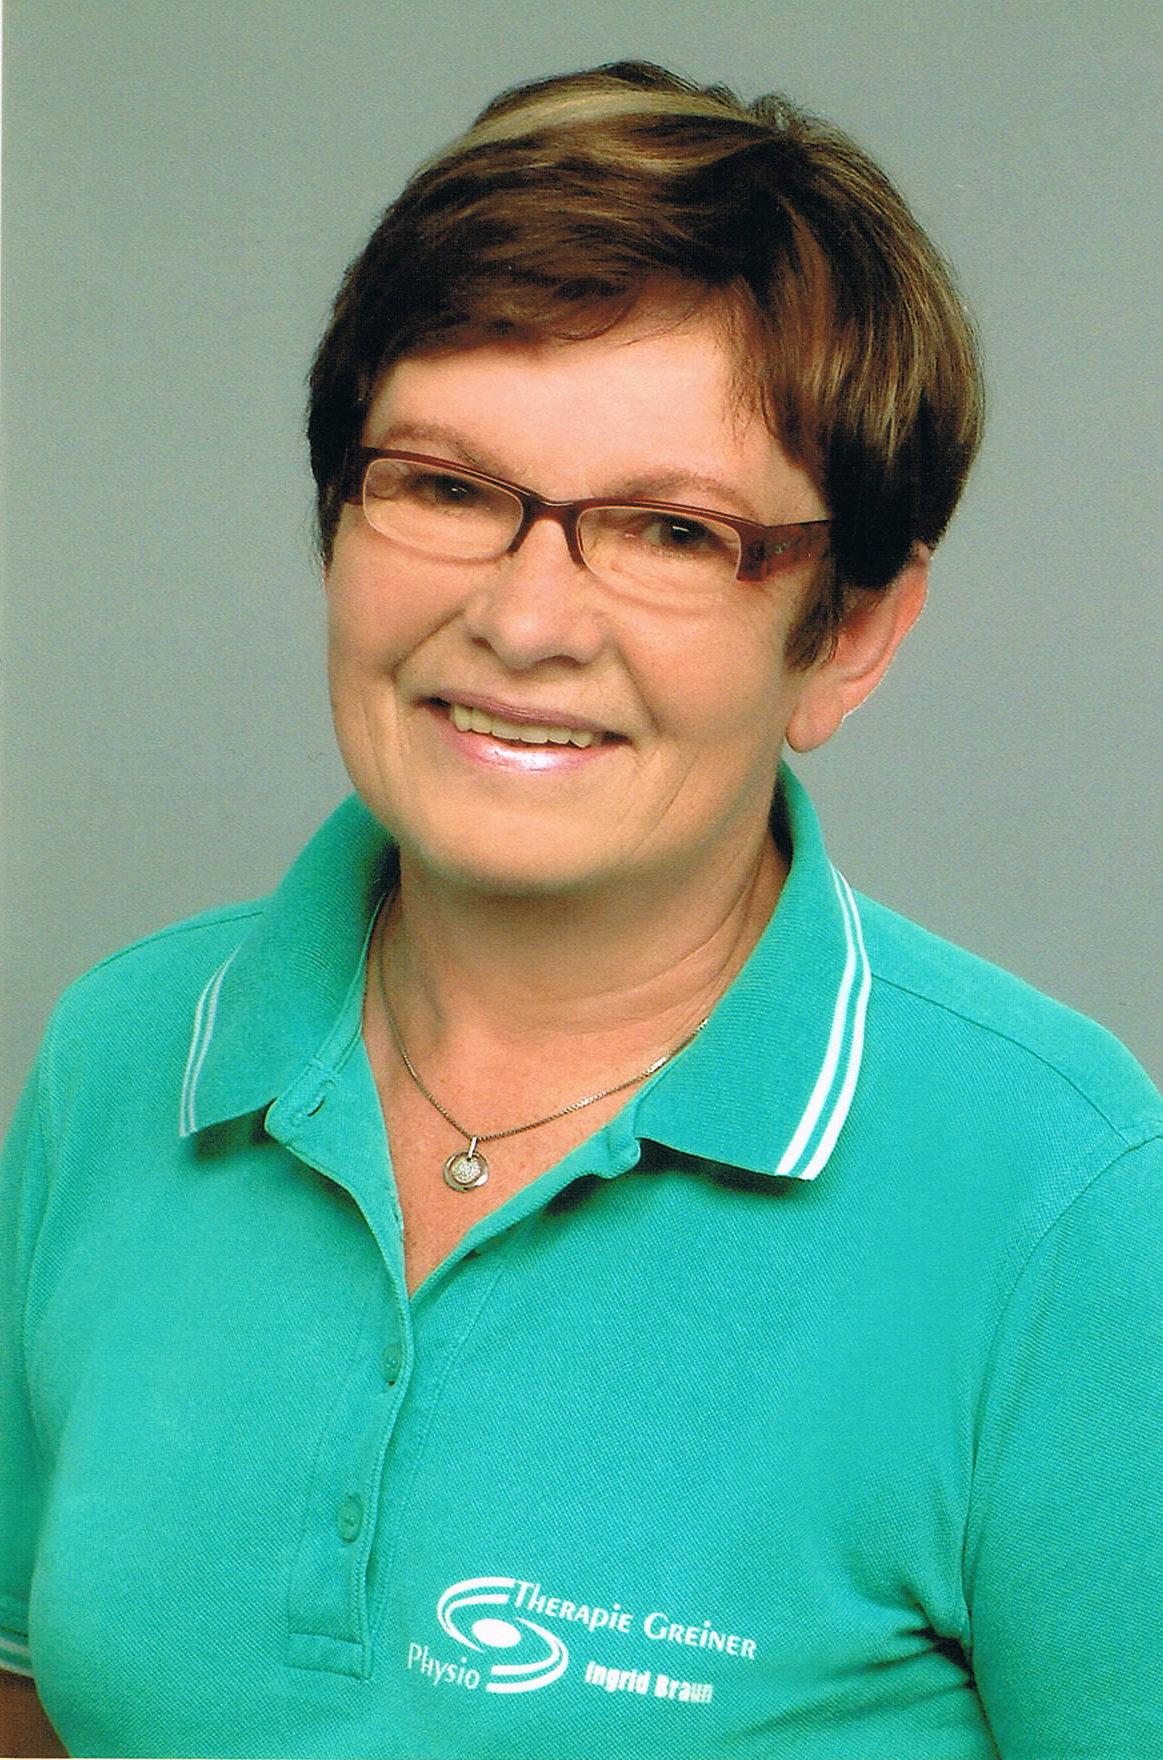 Ingrid Braun